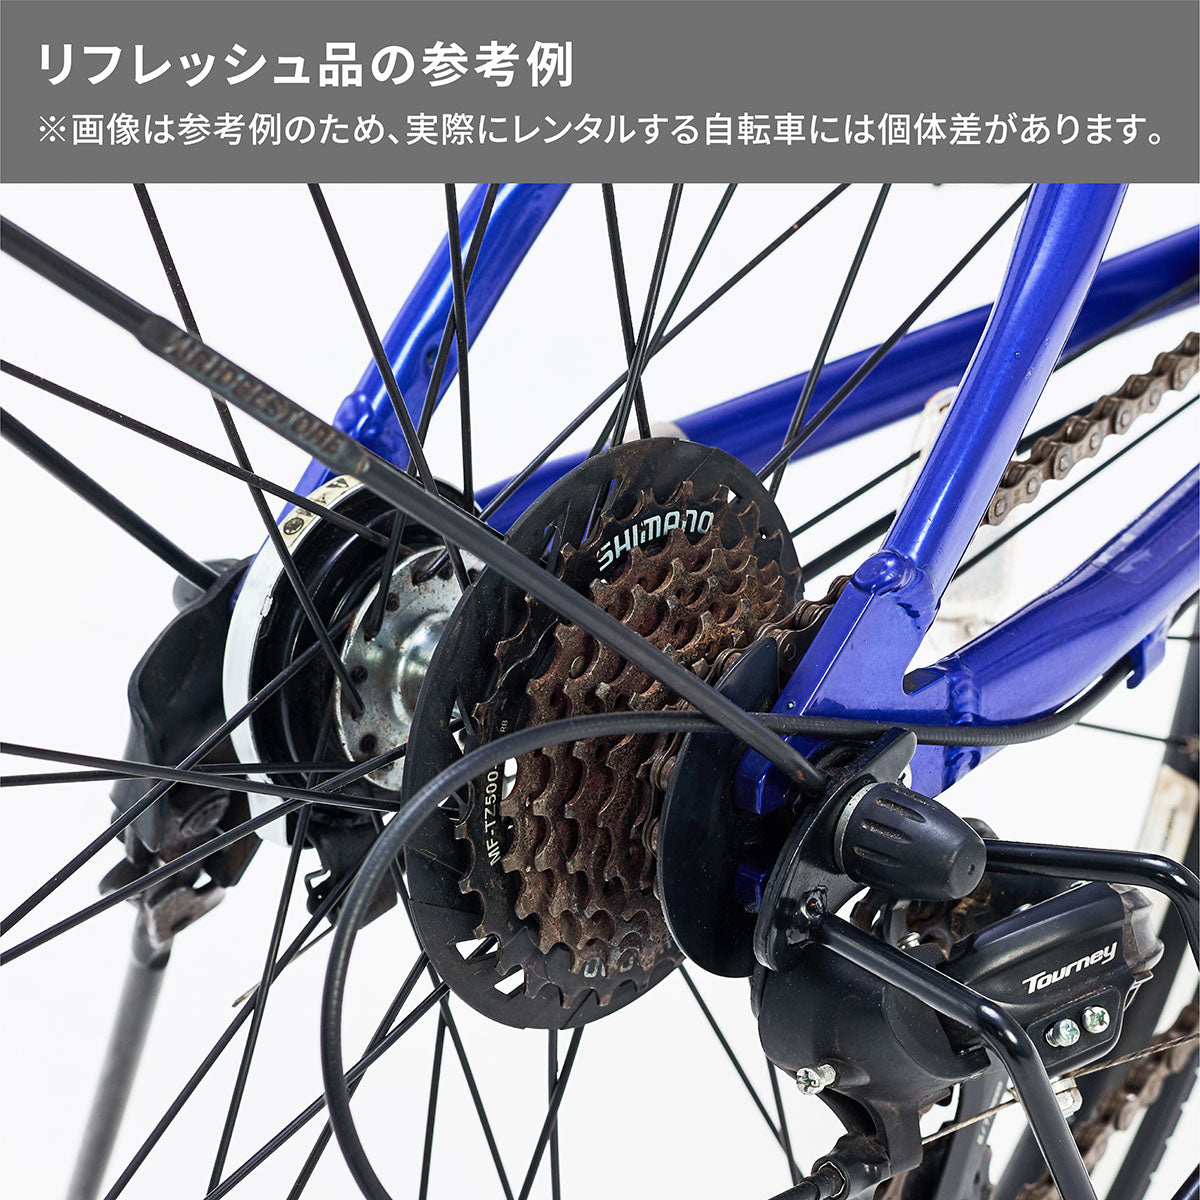 シュライン – Bridgestone Cycle Ethicle